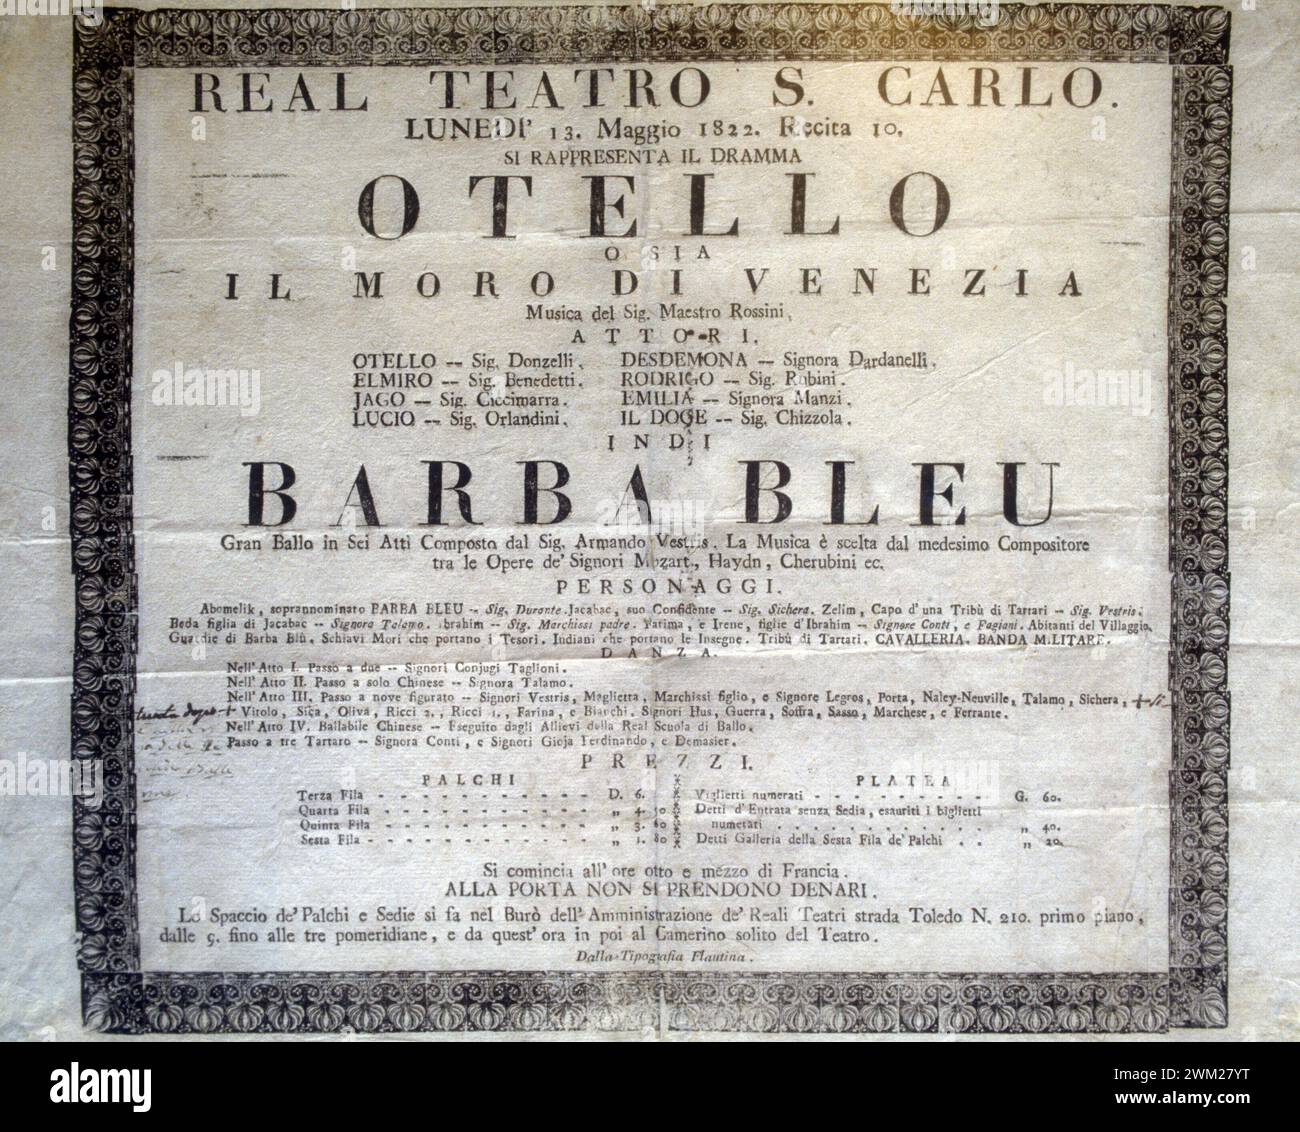 MME4795903 Playbill de l'opéra "" Otello" (composé par Gioacchino Rossini en 1816) joué au Théâtre San Carlo de Naples / Locandina dell'opera "" Otello" (scritta nel 1816 de Gioacchino Rossini), rappresentata al Teatro san Carlo di Napoli - reproduit par Marcello Mencarini ; (add.info.: Playbill de l'opéra "" Otello" (composé par Gioacchino Rossini en 1816) joué au Théâtre San Carlo de Naples / Locandina dell'opera "" Otello" (scritta nel 1816 de Gioacchino Rossini), rappresentata al Teatro san Carlo di Napoli - reproduit par Marcello Mencarini) ; © Marcello Mencarini. Al Banque D'Images